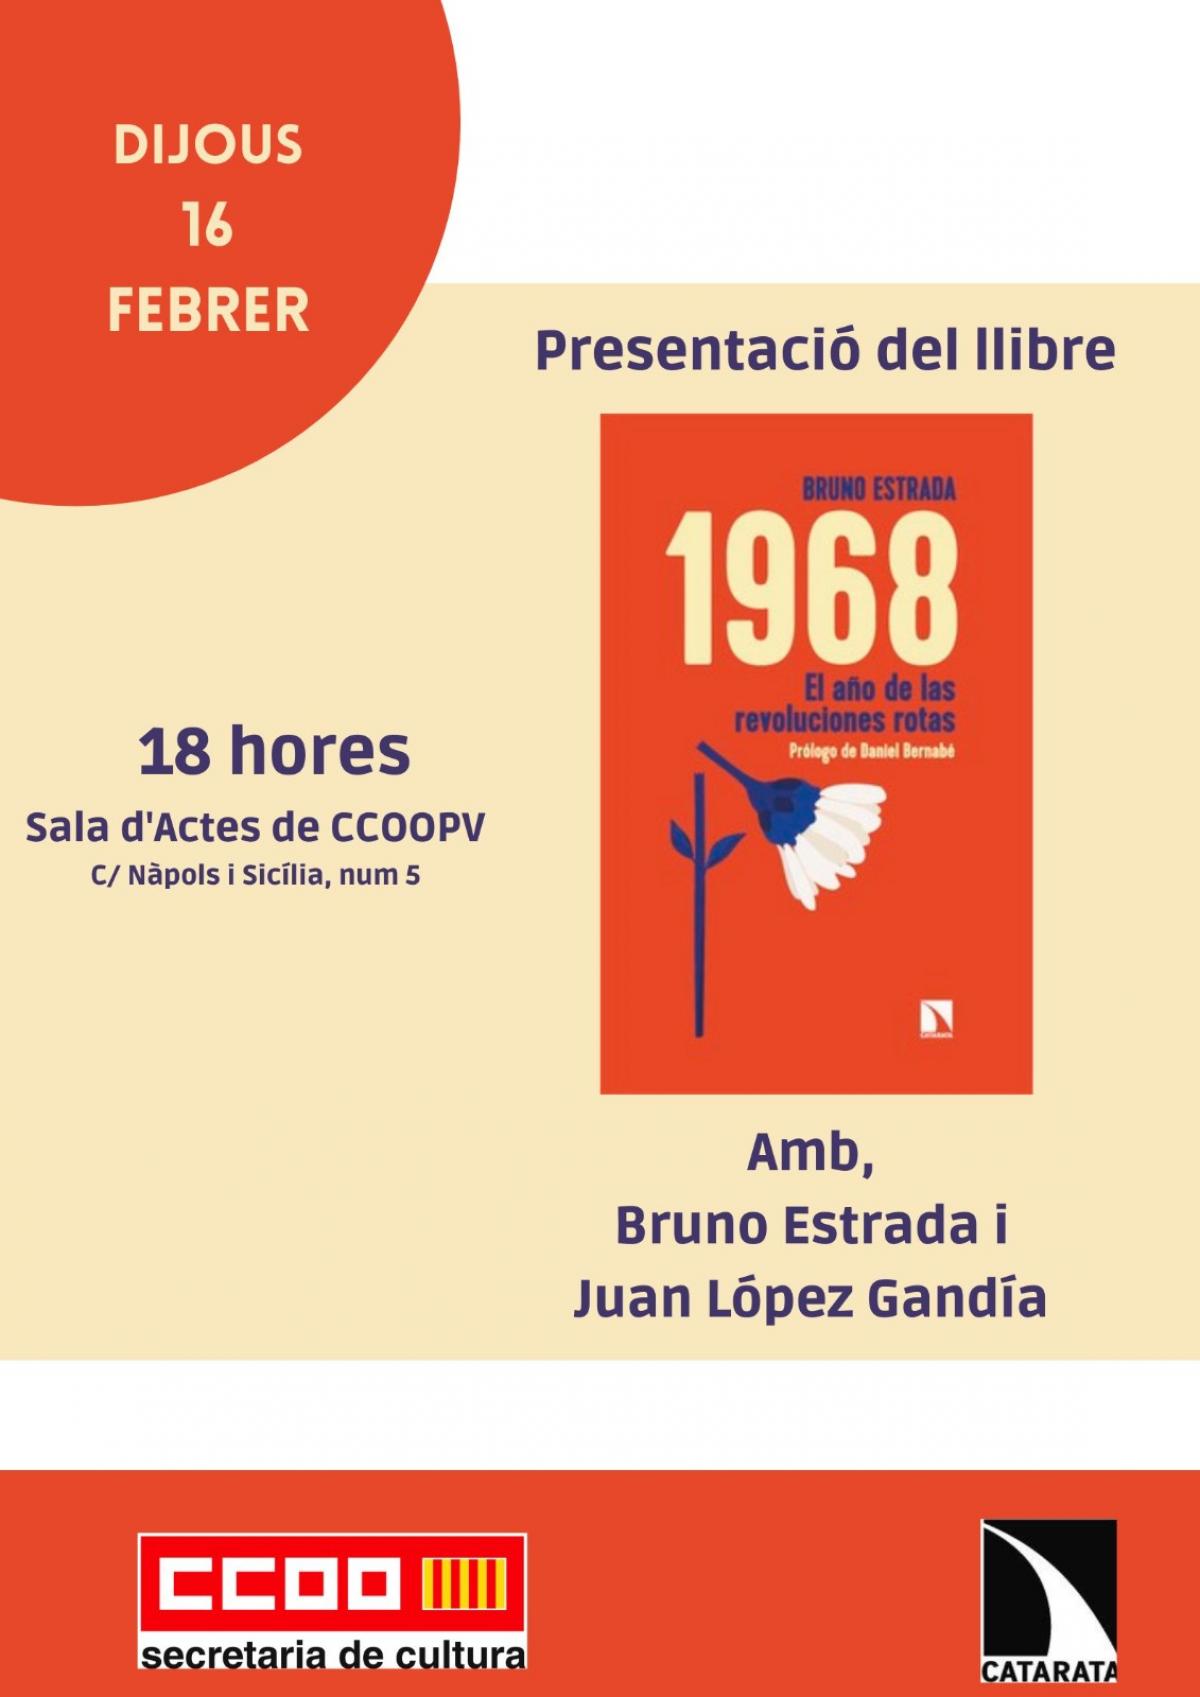 Presentació del llibre de Bruno Estrada, a CCOO PV.